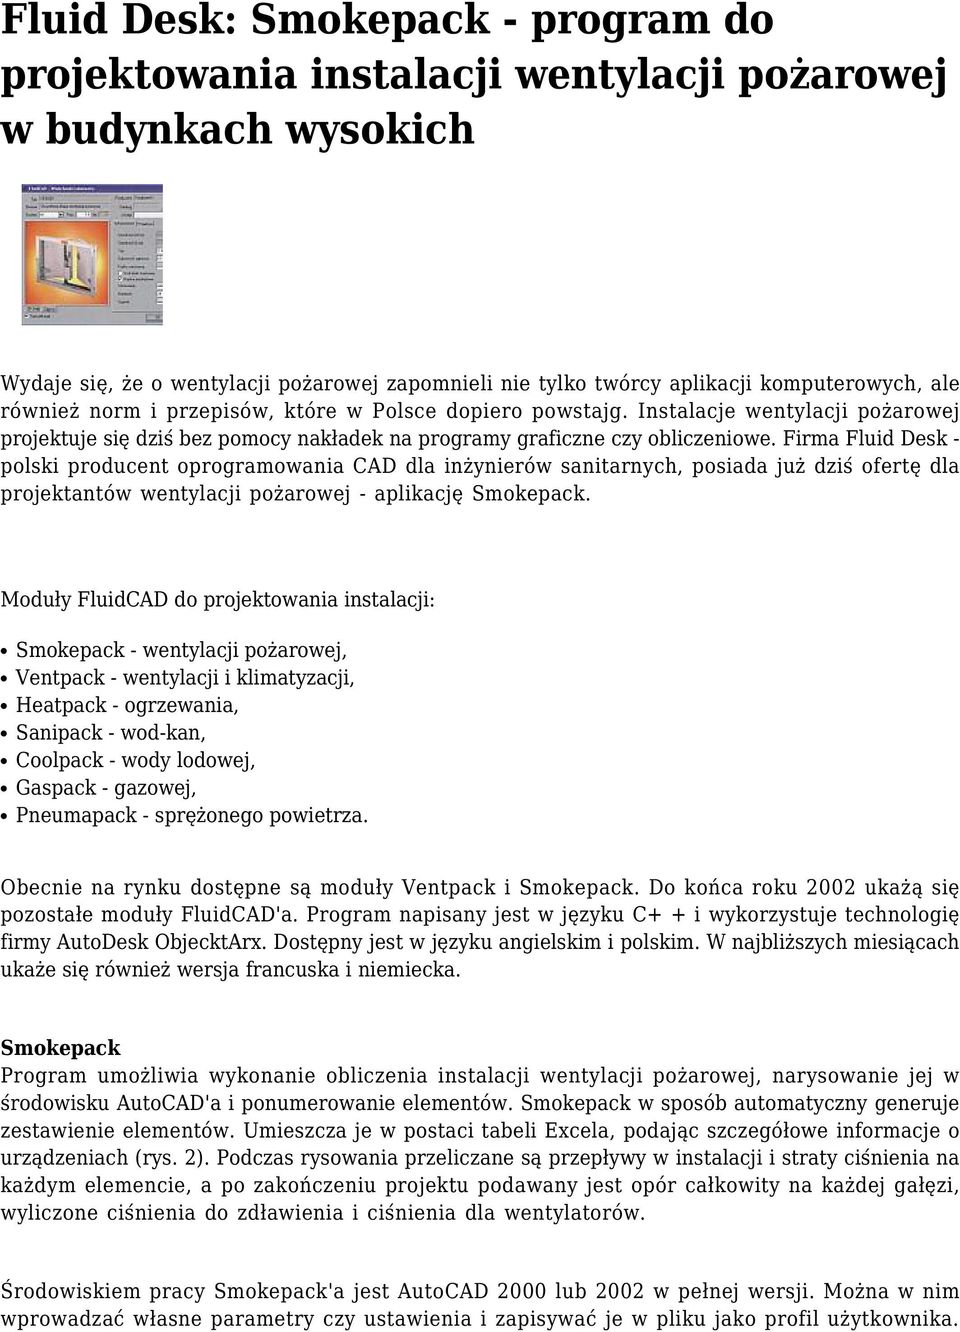 Firma Fluid Desk - polski producent oprogramowania CAD dla inżynierów sanitarnych, posiada już dziś ofertę dla projektantów wentylacji pożarowej - aplikację Smokepack.